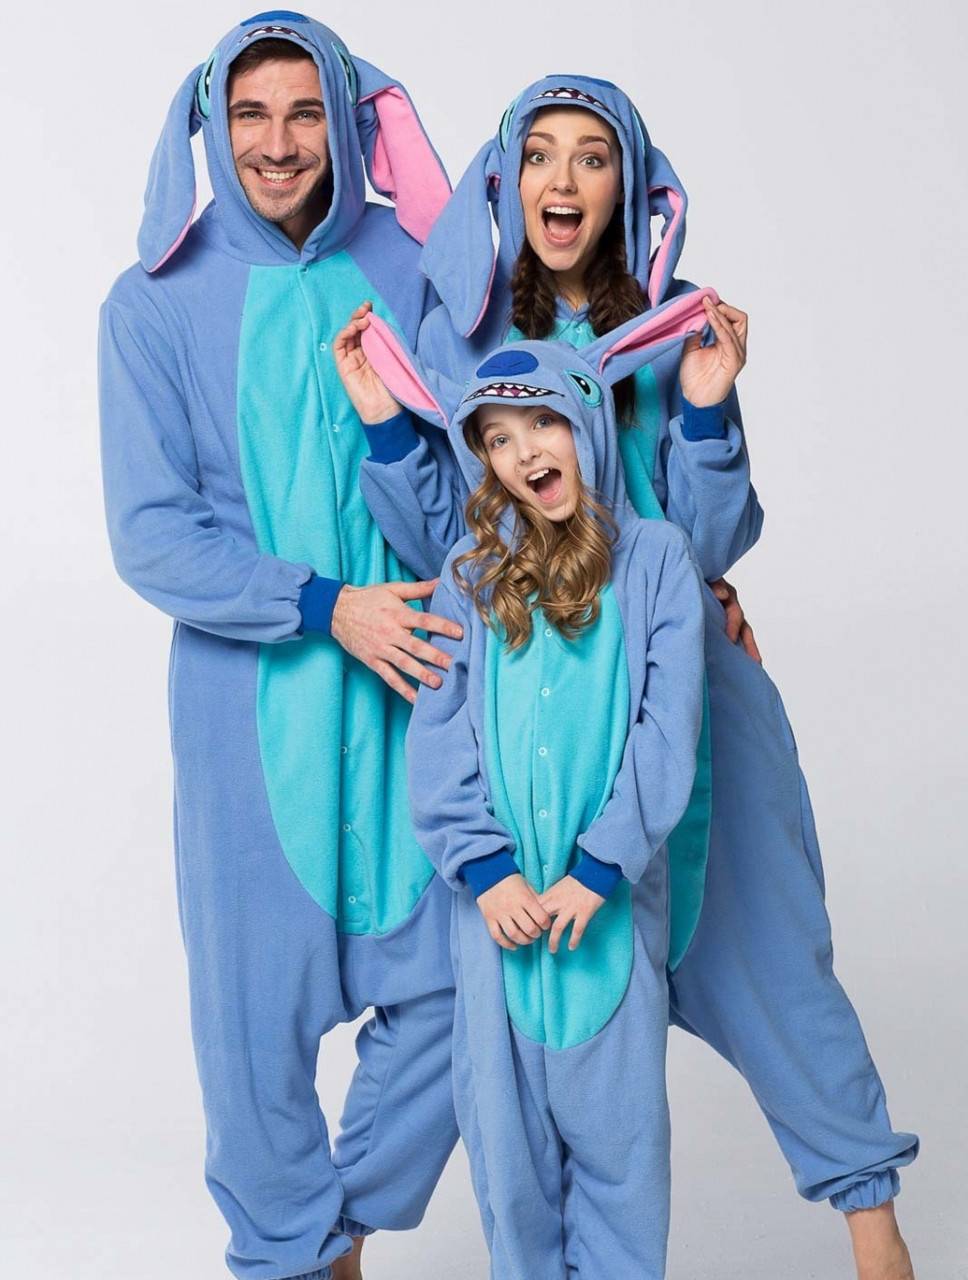 Что такое кигуруми? история появления, виды, материалы, производители пижамы. как выбрать кигуруми для взрослых, детей, девочек.